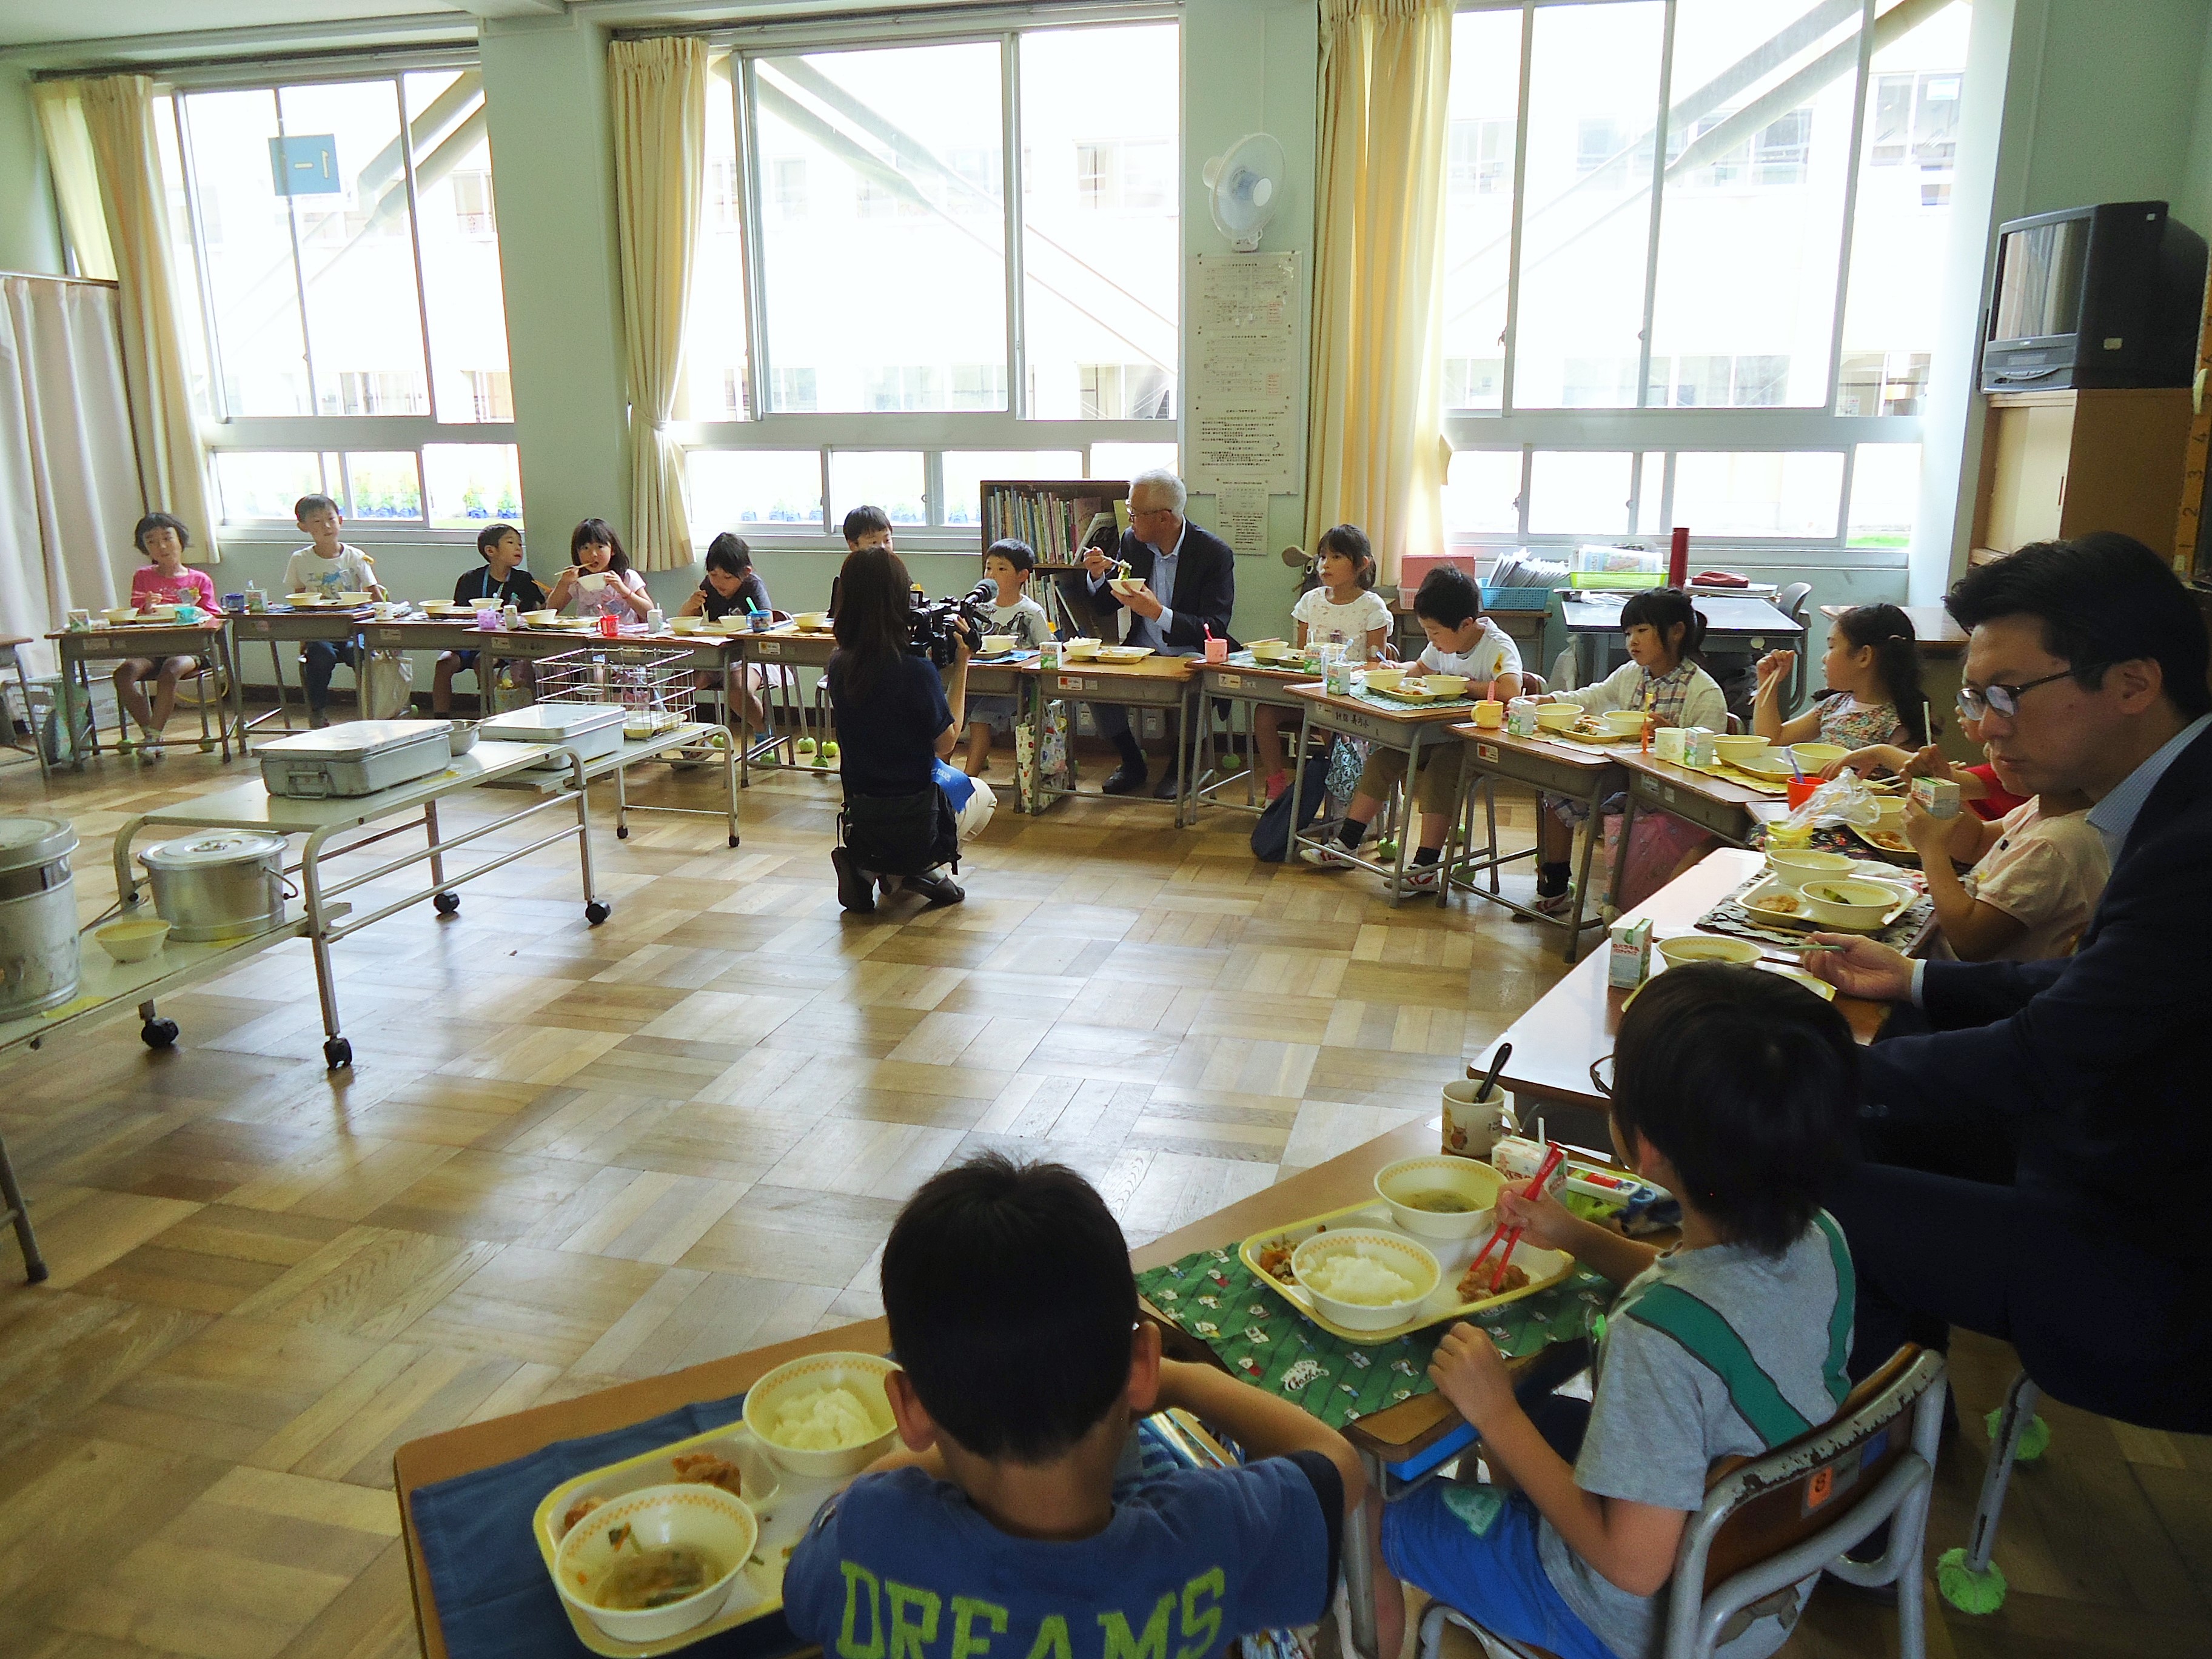 義方小学校1年1組の児童たちが、おいしそうに給食を食べています。